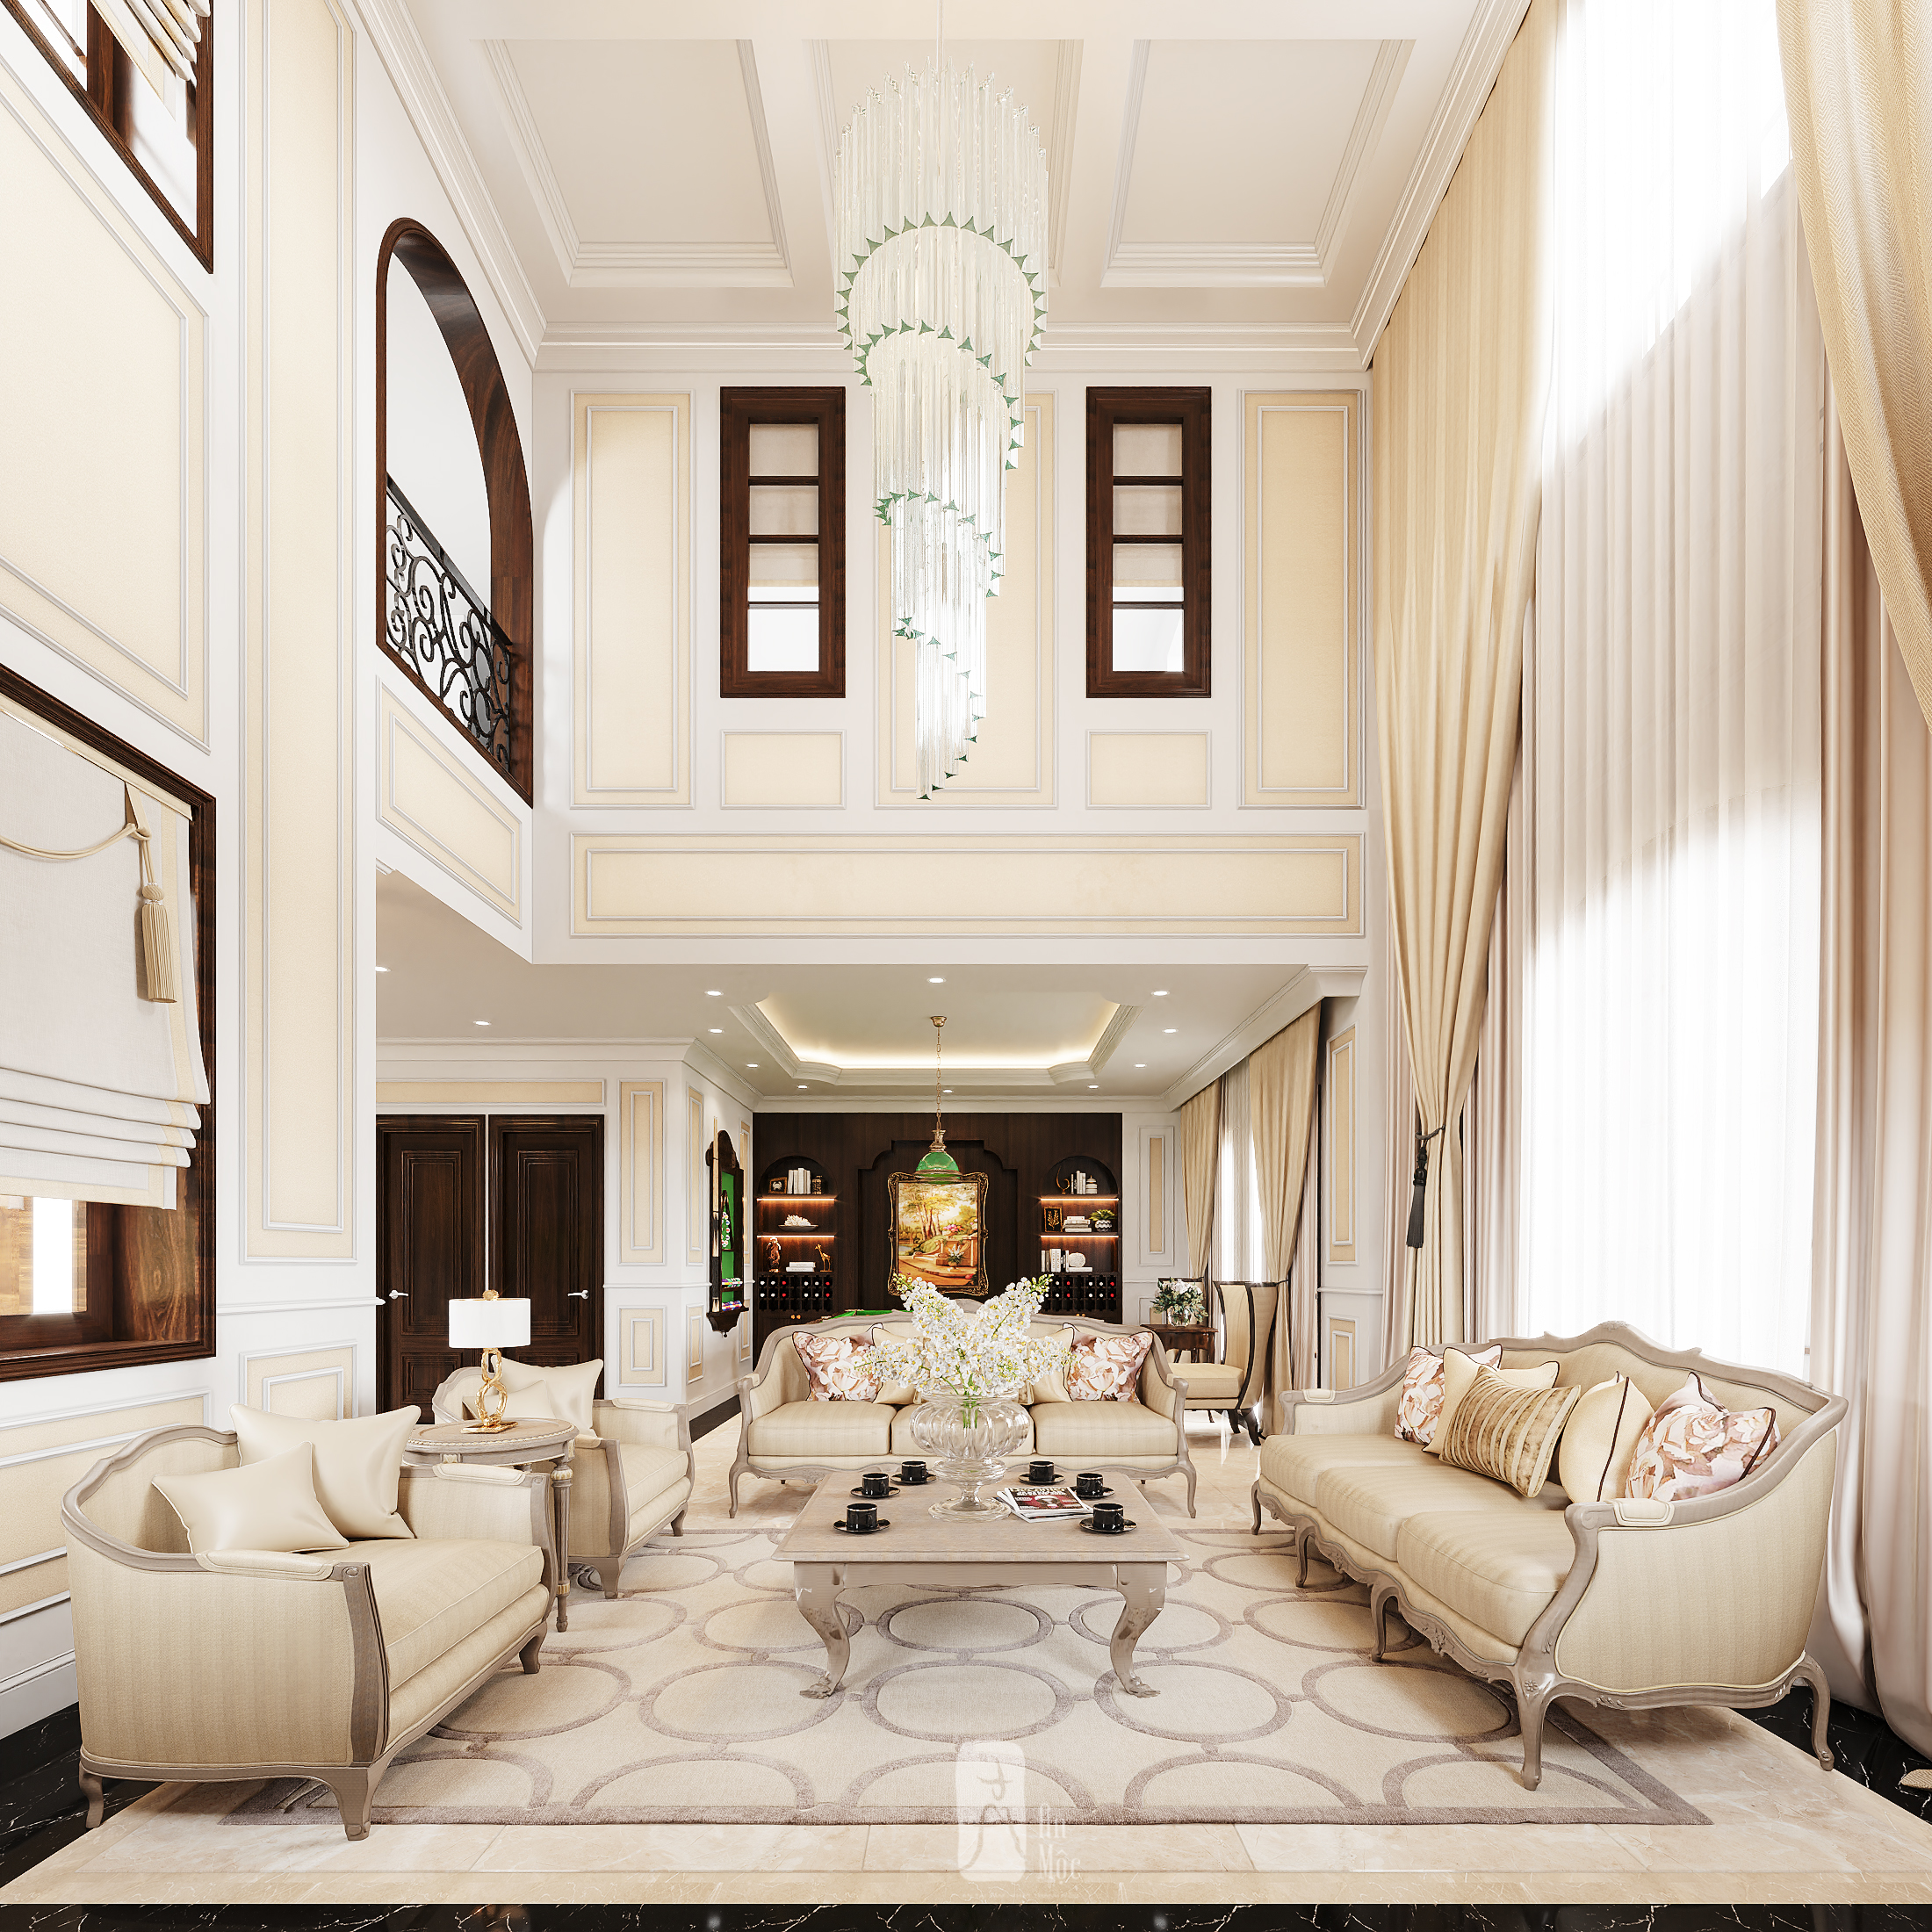 Thiết kế nội thất Biệt Thự tại Hà Nội BIỆT THỰ NAM AN KHANH 1595072586 1